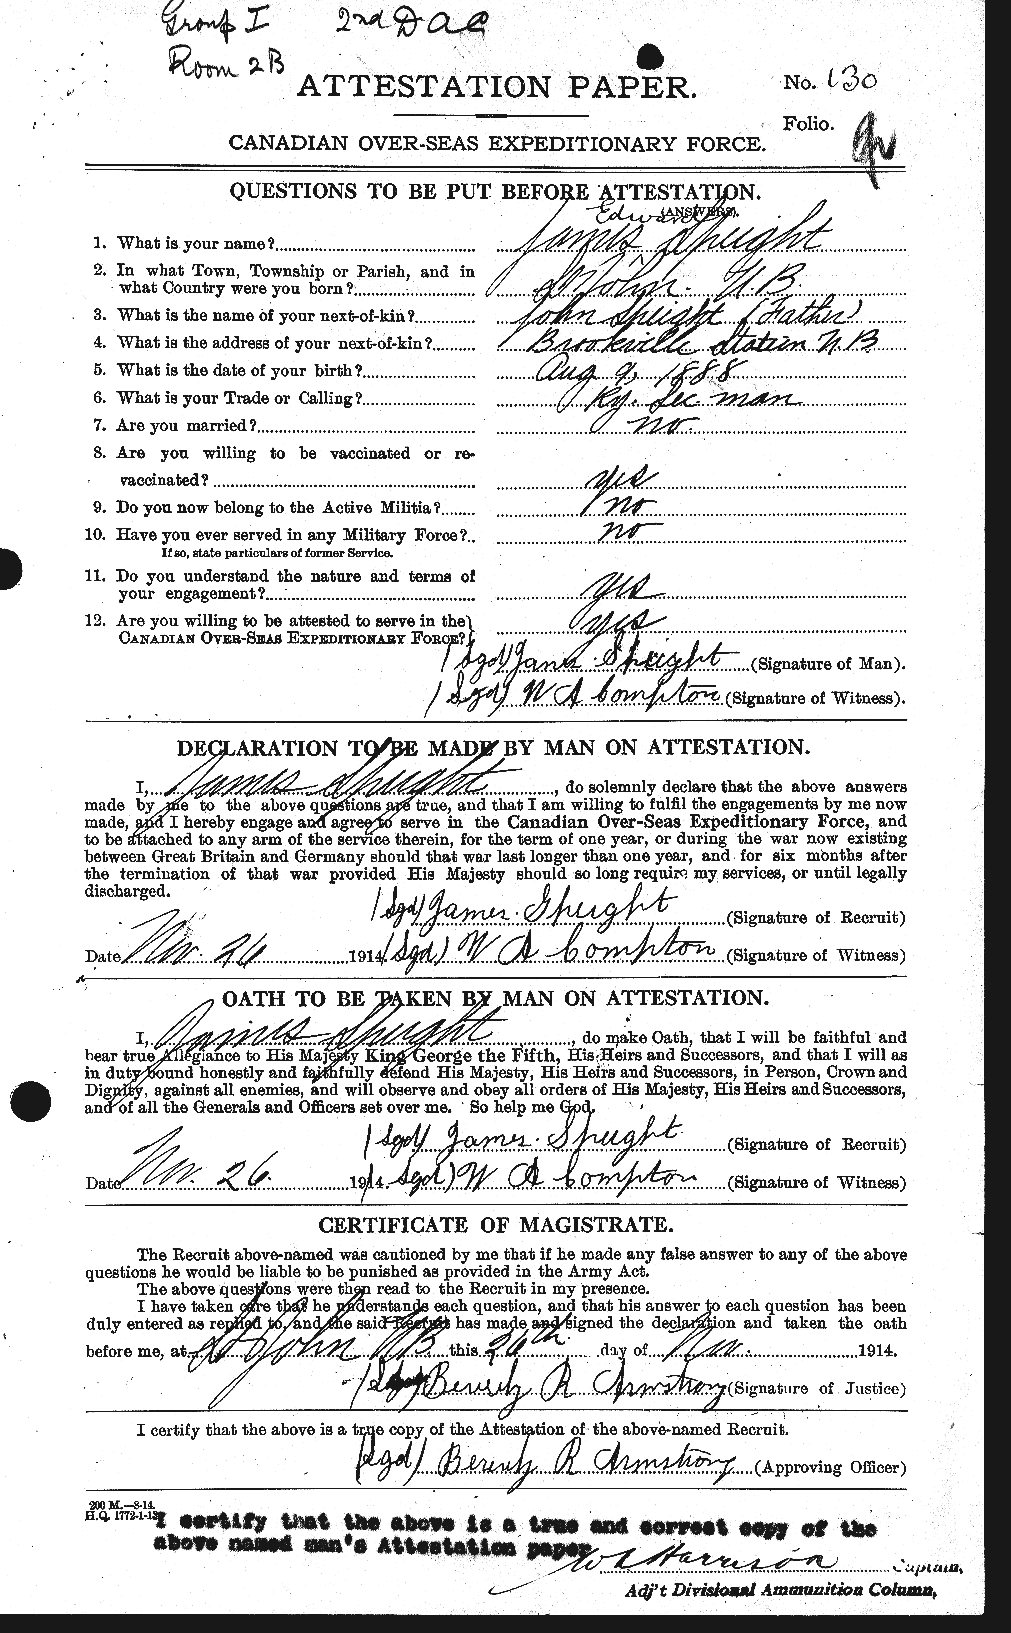 Dossiers du Personnel de la Première Guerre mondiale - CEC 110069a